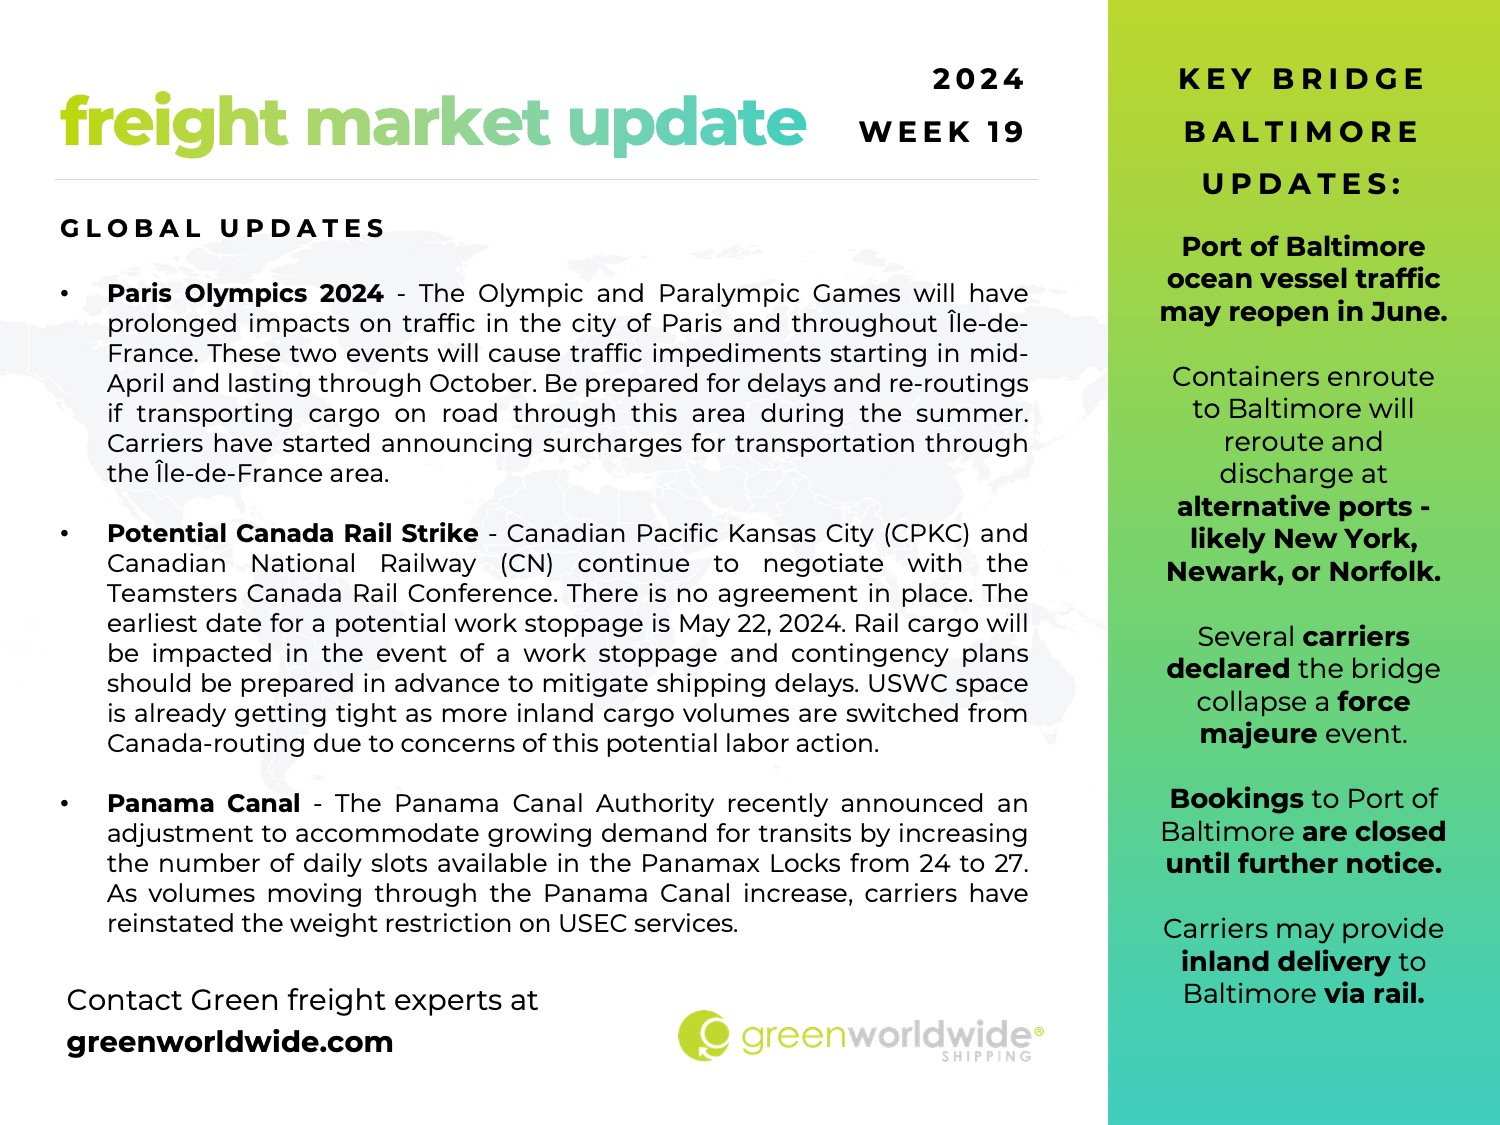 green worldwide shipping, freight market update, week 19